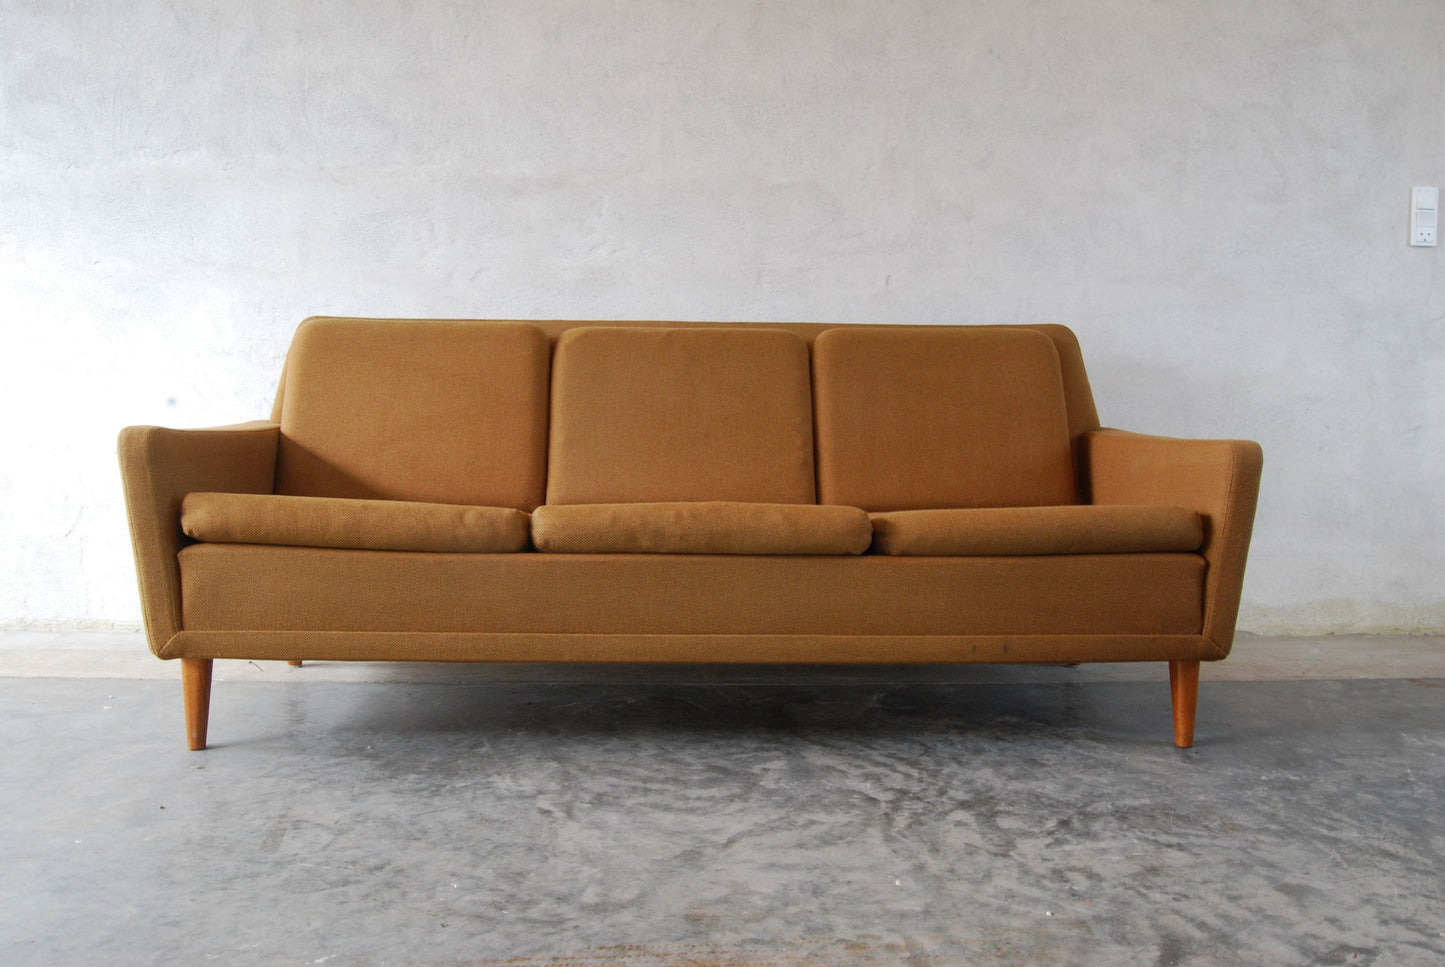 Three seat sofa by DUX no. 2